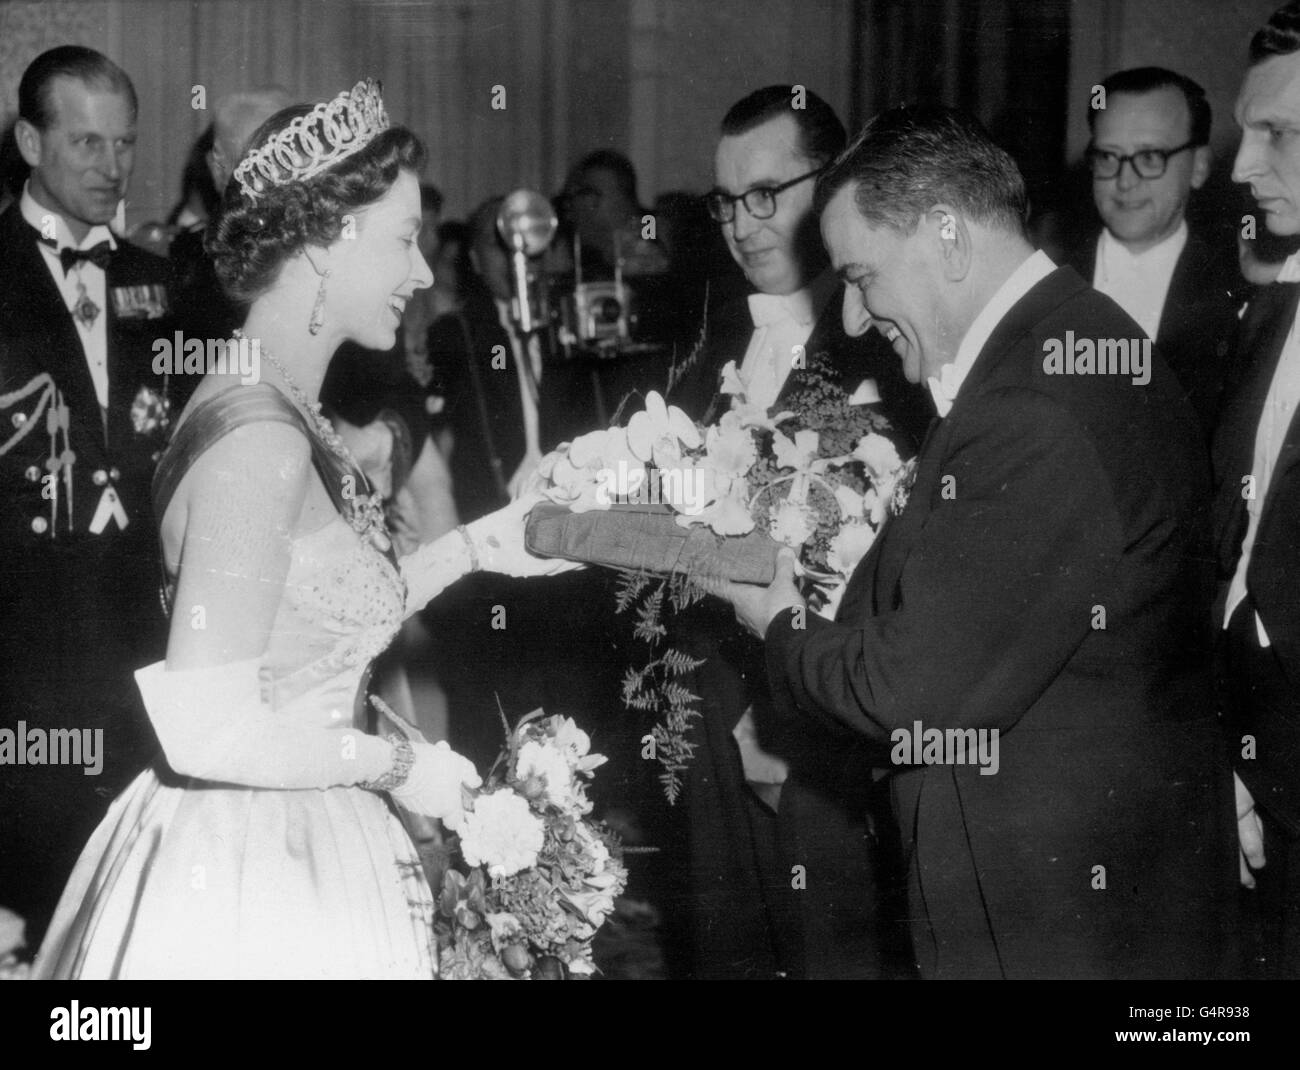 Königin Elizabeth II. Erhält nach einem Galakonzert in Amsterdam einen Blumenstrauß von Eduard van Beinum, dem Dirigenten des weltberühmten Concertgebouw-Orchesters der Niederlande. Der Herzog von Edinburgh sieht links zu. Stockfoto